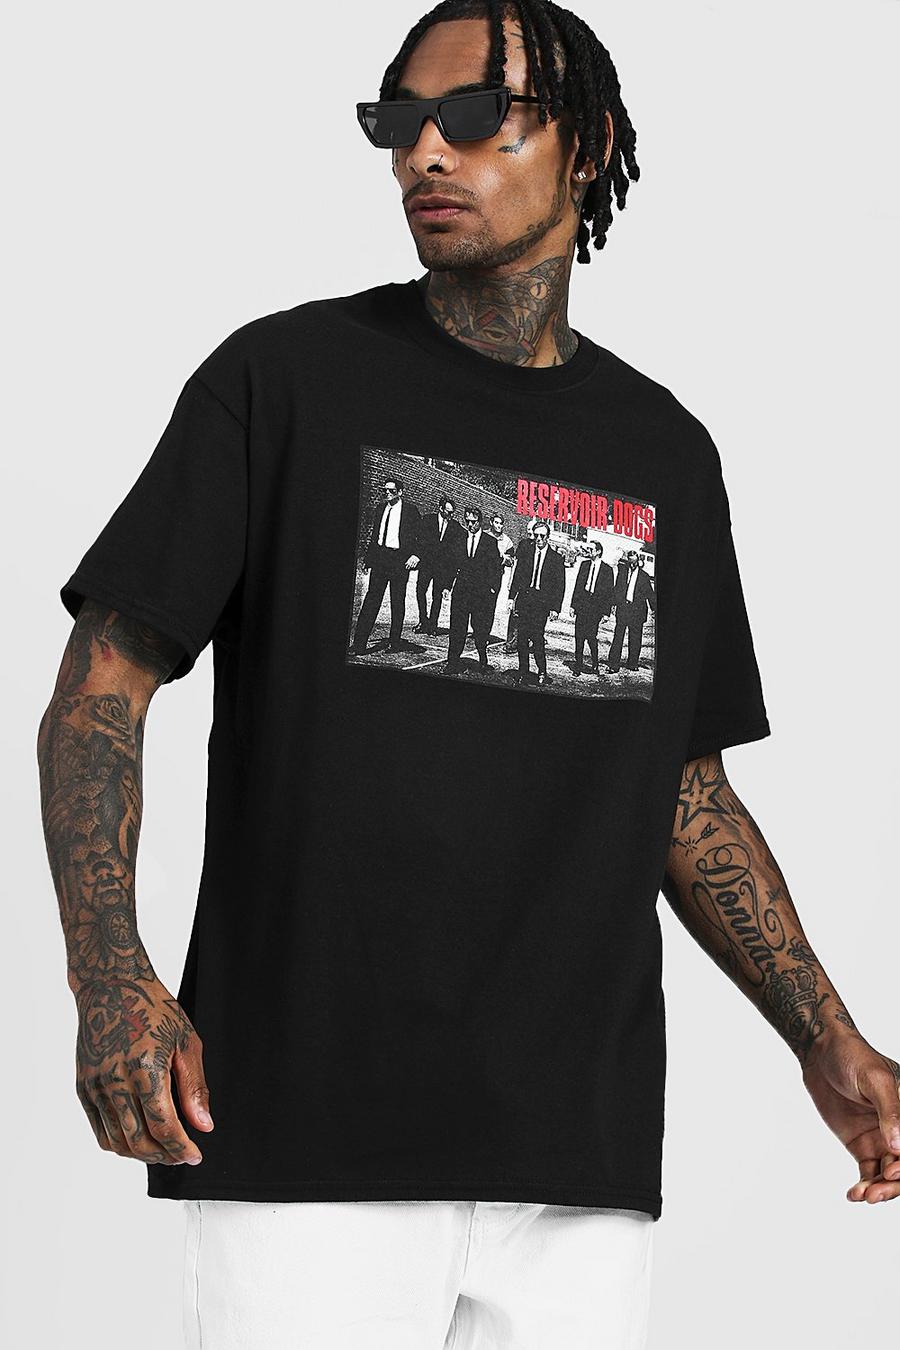 T-shirt Reservoir Dogs Officiel, Noir image number 1